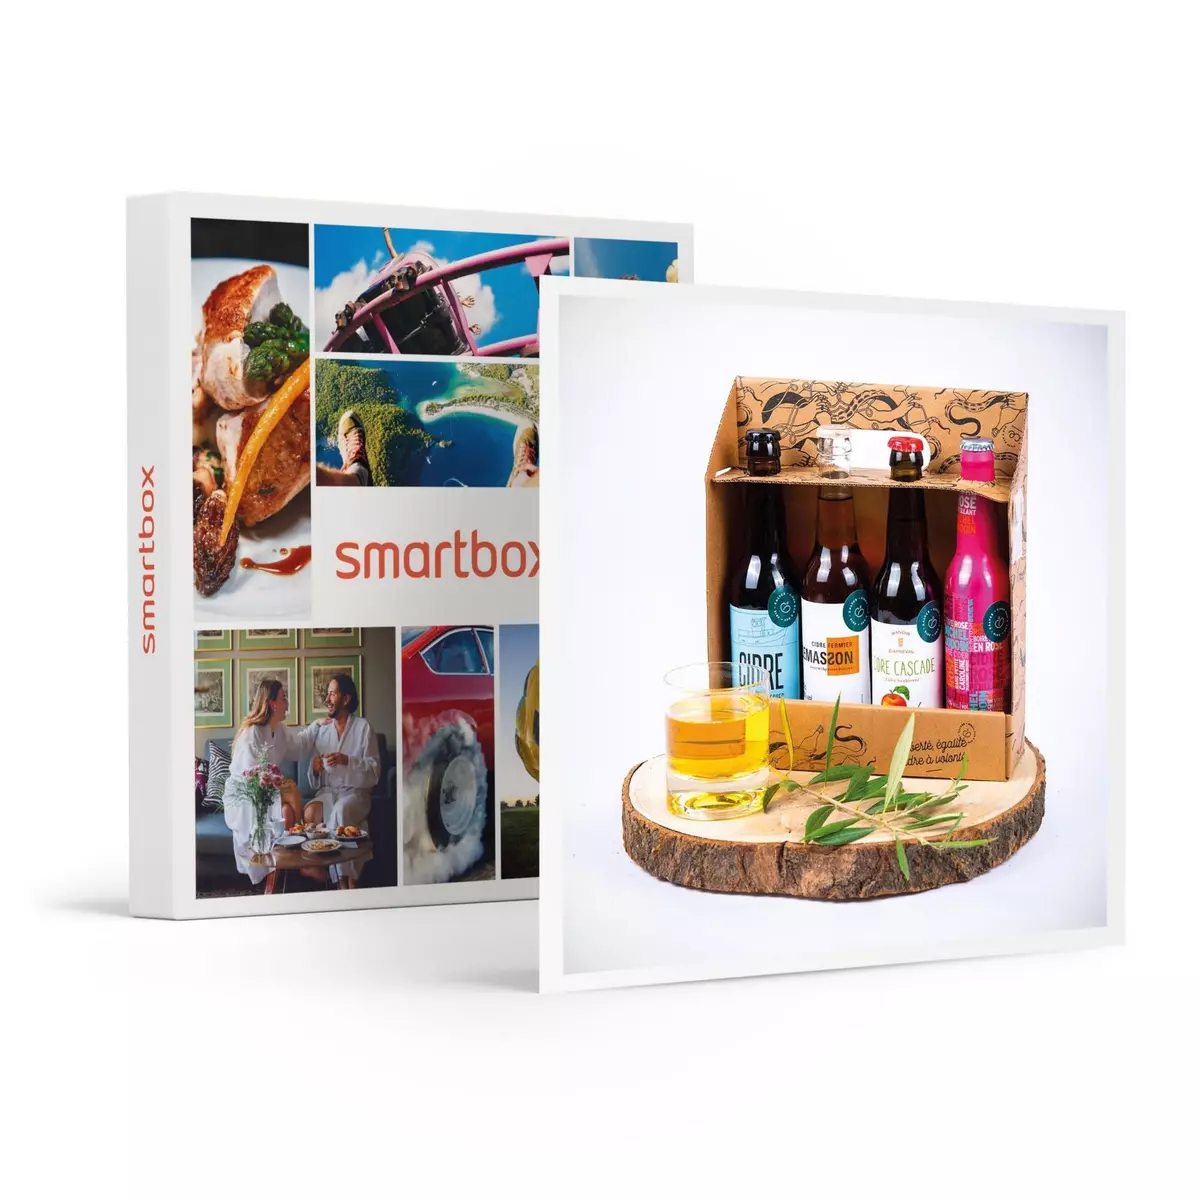 Smartbox Coffret de 4 cidres artisanaux à recevoir et déguster chez soi - Coffret Cadeau Gastronomie